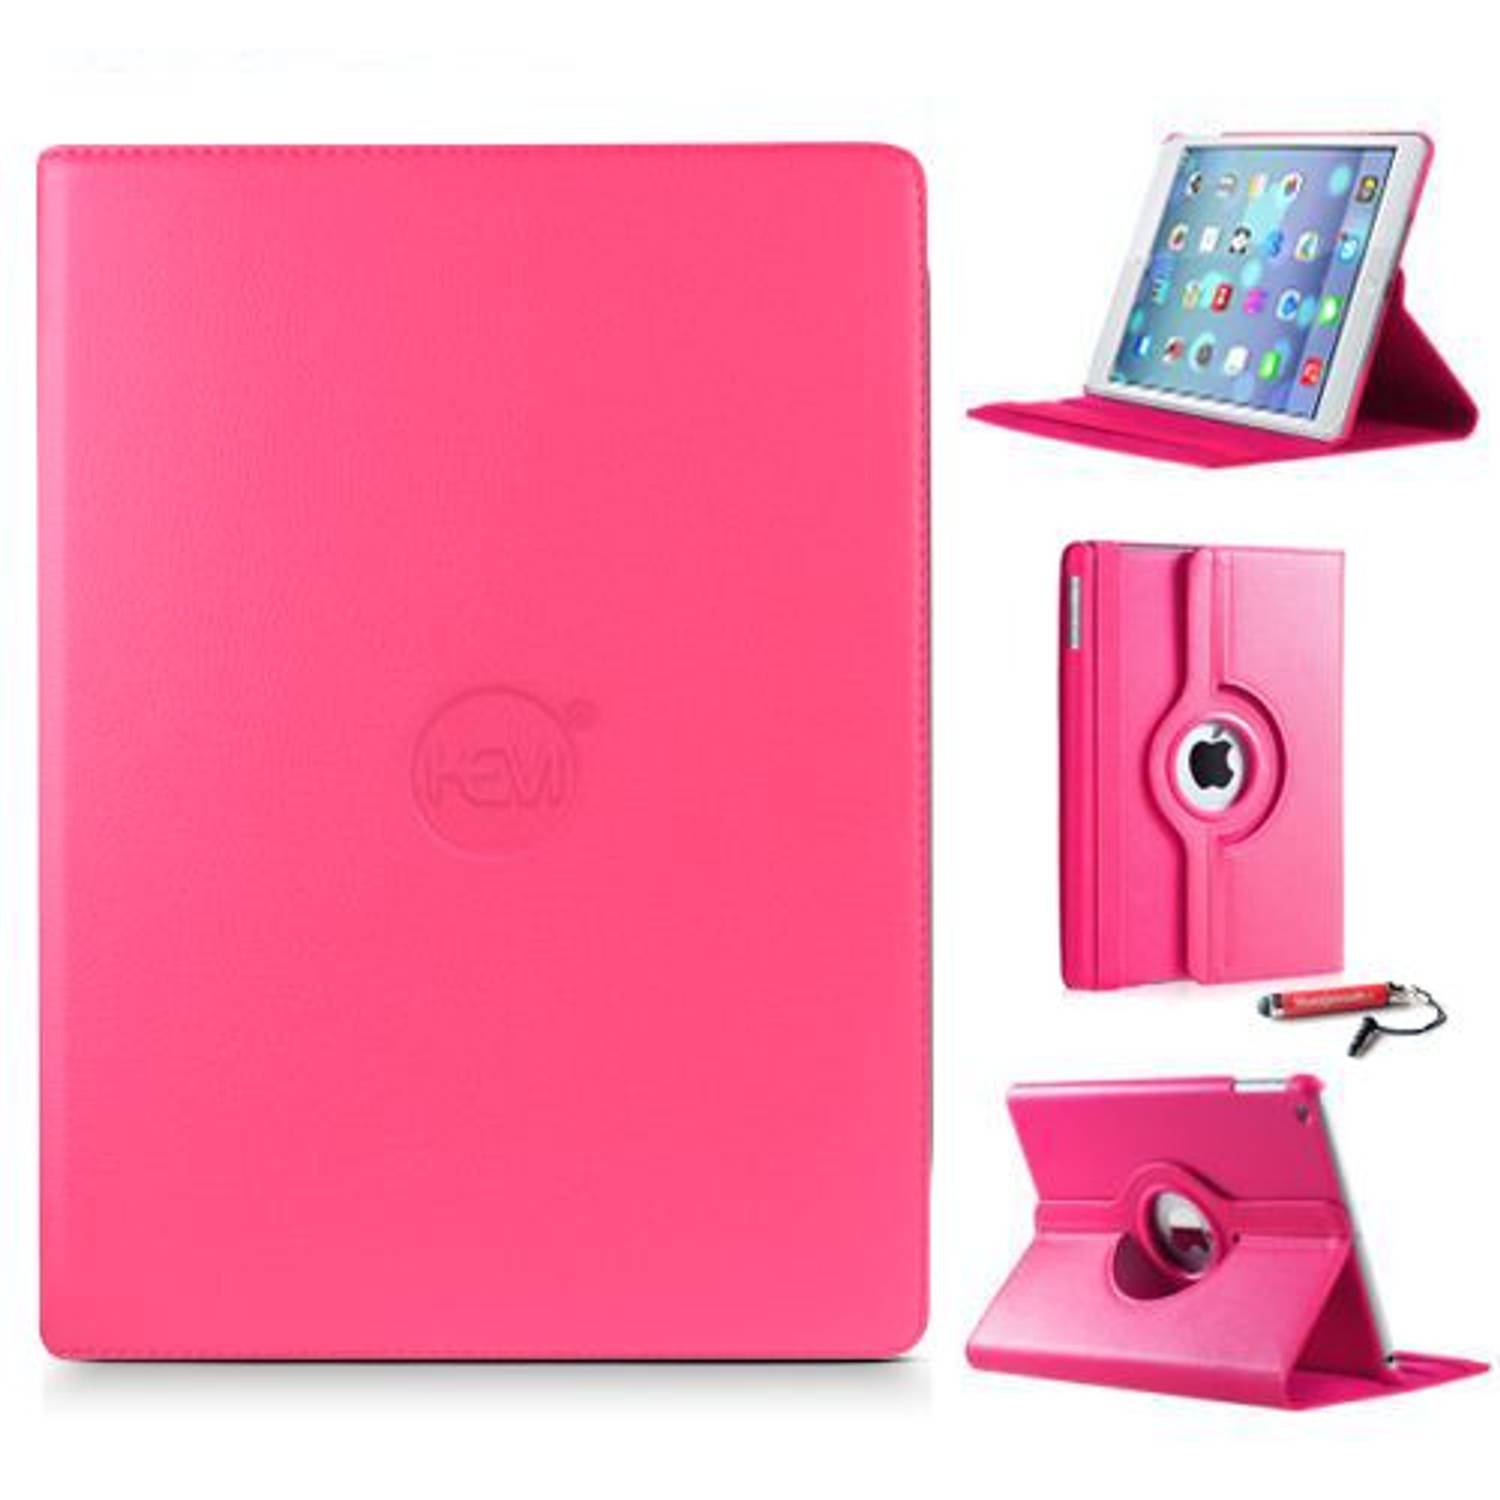 iPad Pro 10.5 hoes HEM hard roze / iPad hoes hard roze / hoes iPad Pro 10.5 hard roze - Ipad hoes, Tablethoes